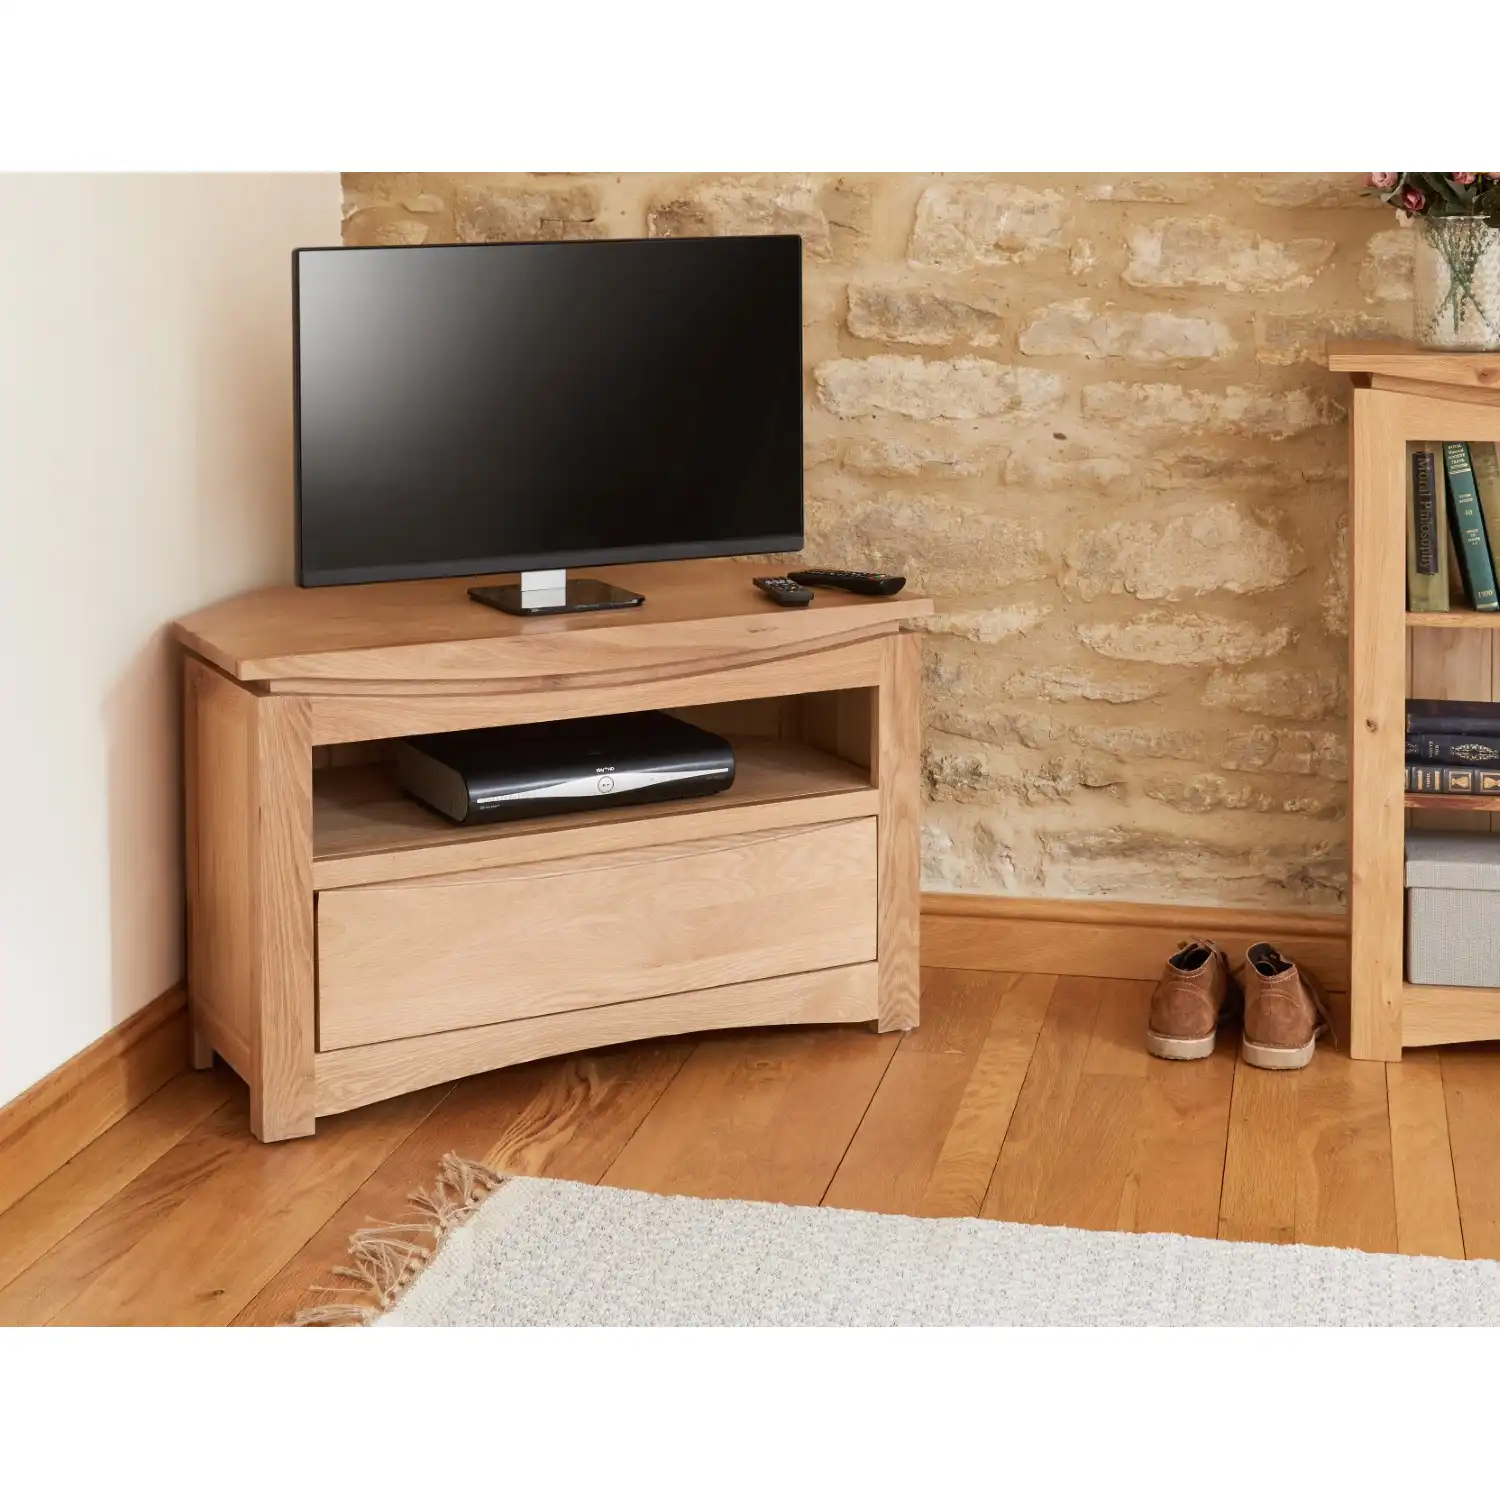 Light Solid Oak Corner TV Cabinet 1 Drawer Base